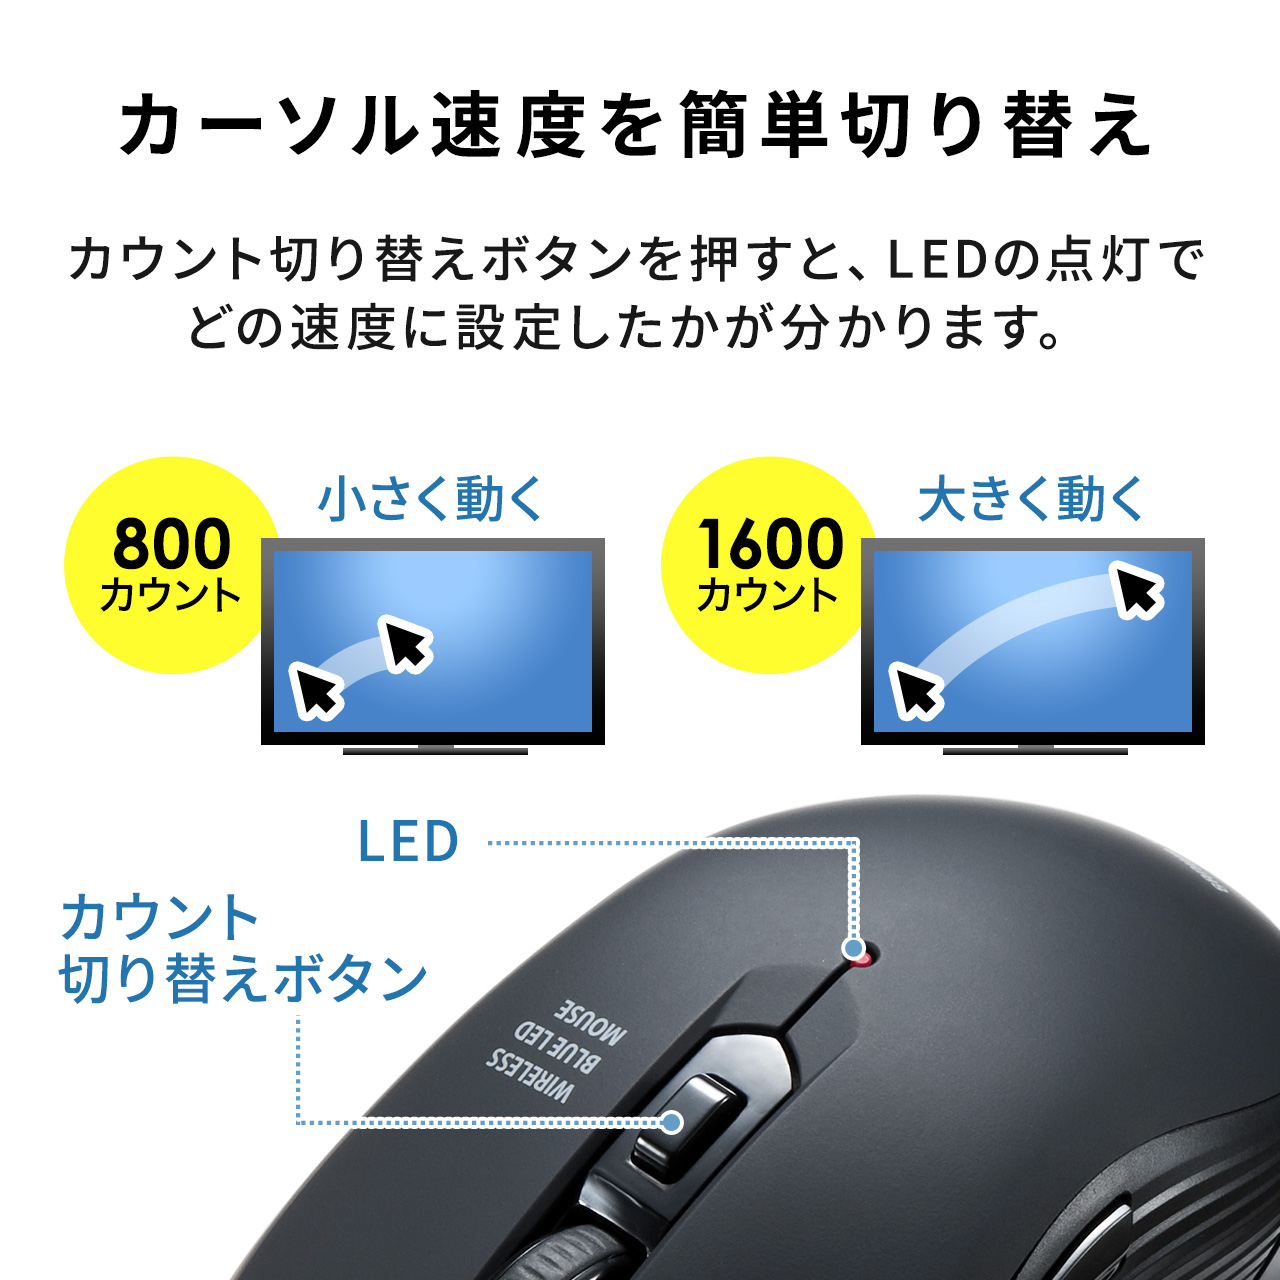 ワイヤレスマウス 静音 5ボタン 2.4GHz 無線 マウス Type-A レシーバー DPI切替え ラバーコーティング 多ボタン コスパ ブラック 400-MAWS097BK